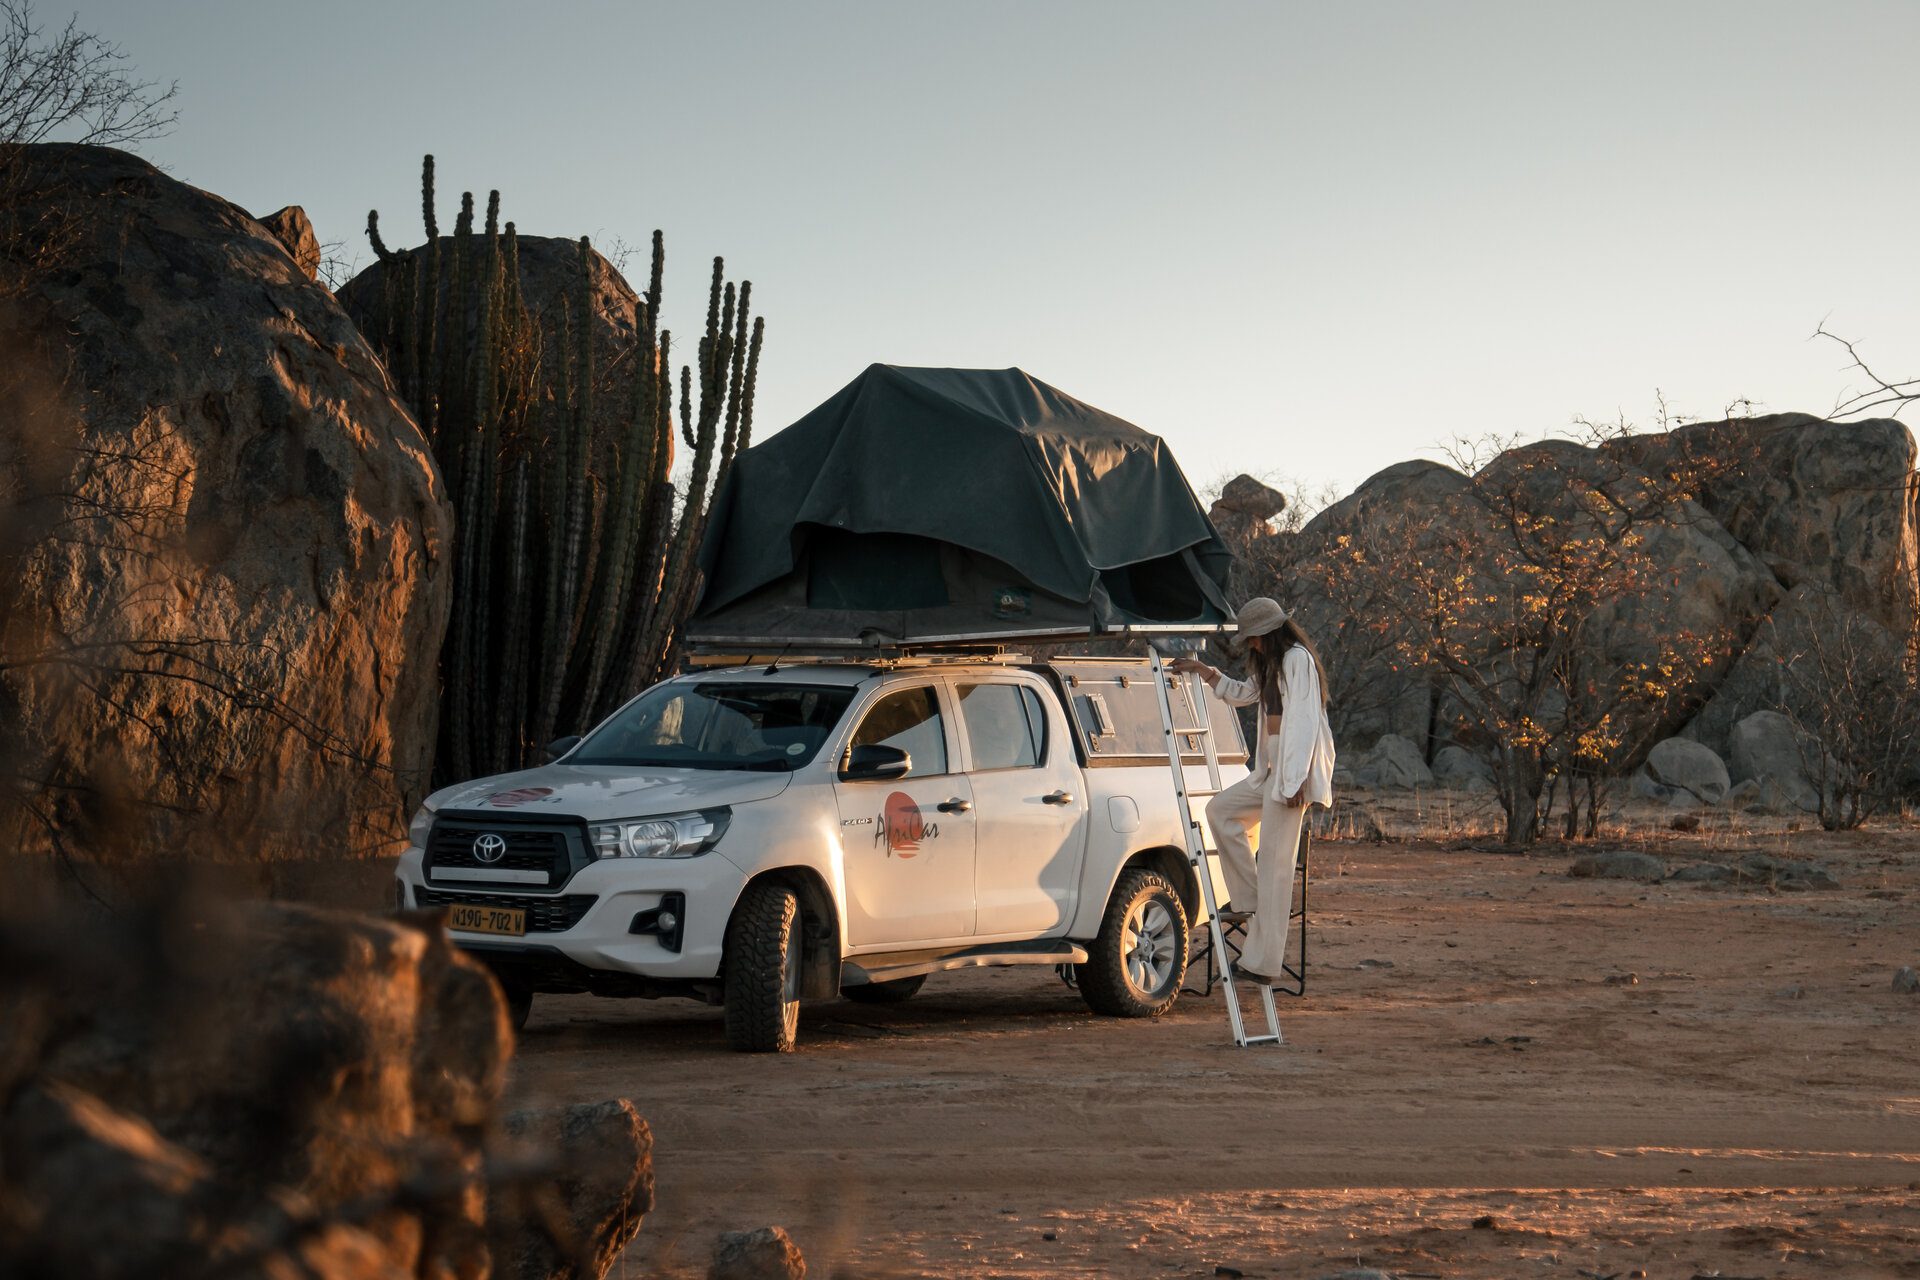 Wat is beste reistijd voor Namibië?